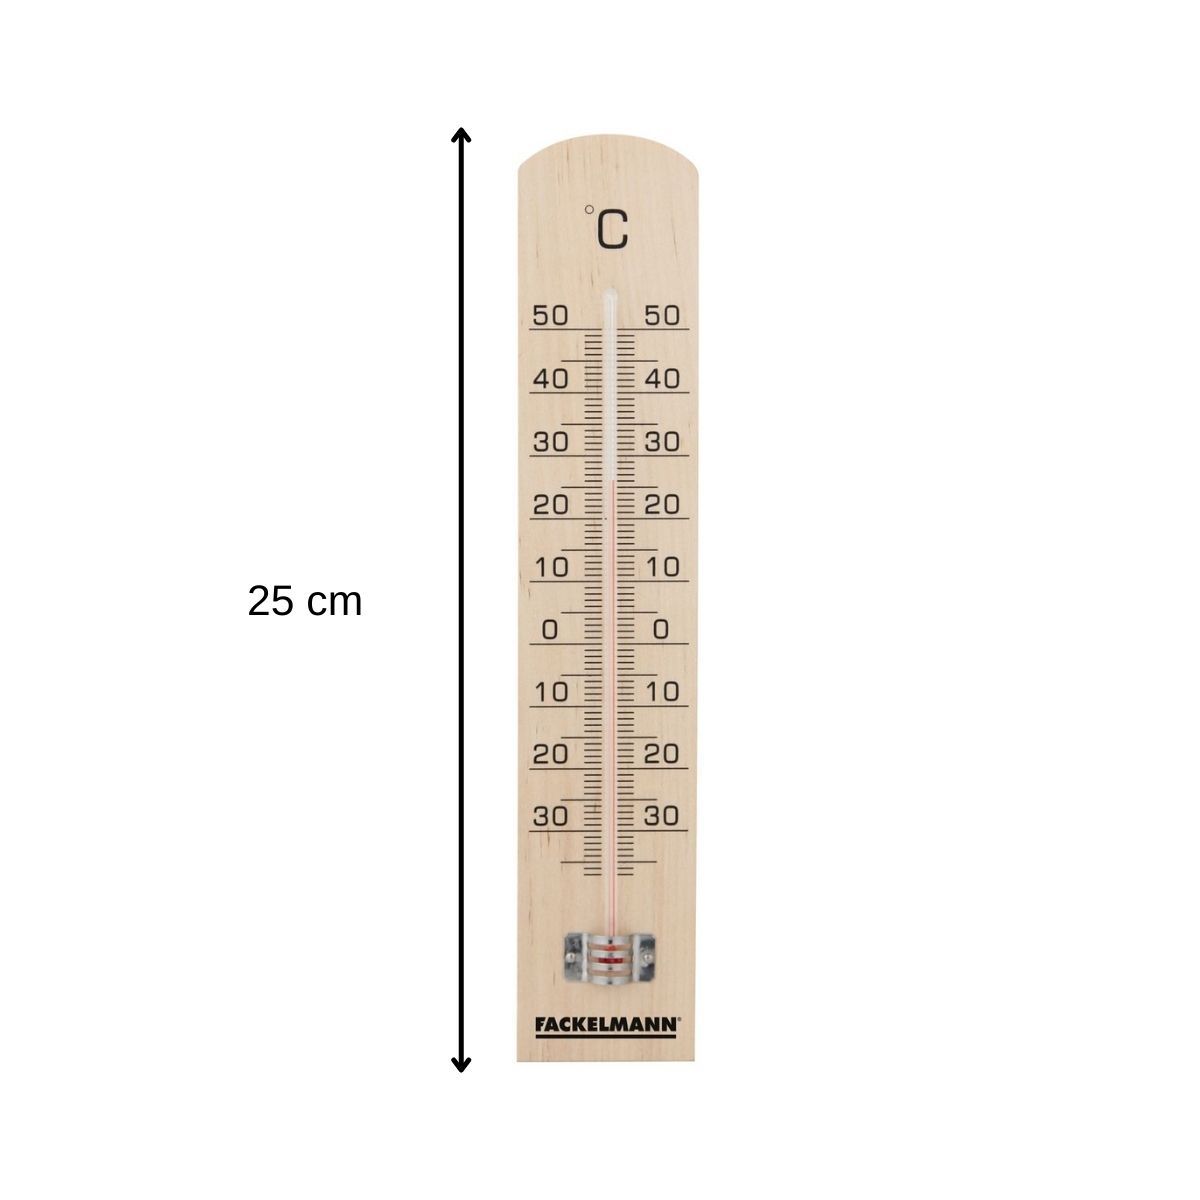 Thermomètre intérieur bois Acheter - Thermomètres - LANDI